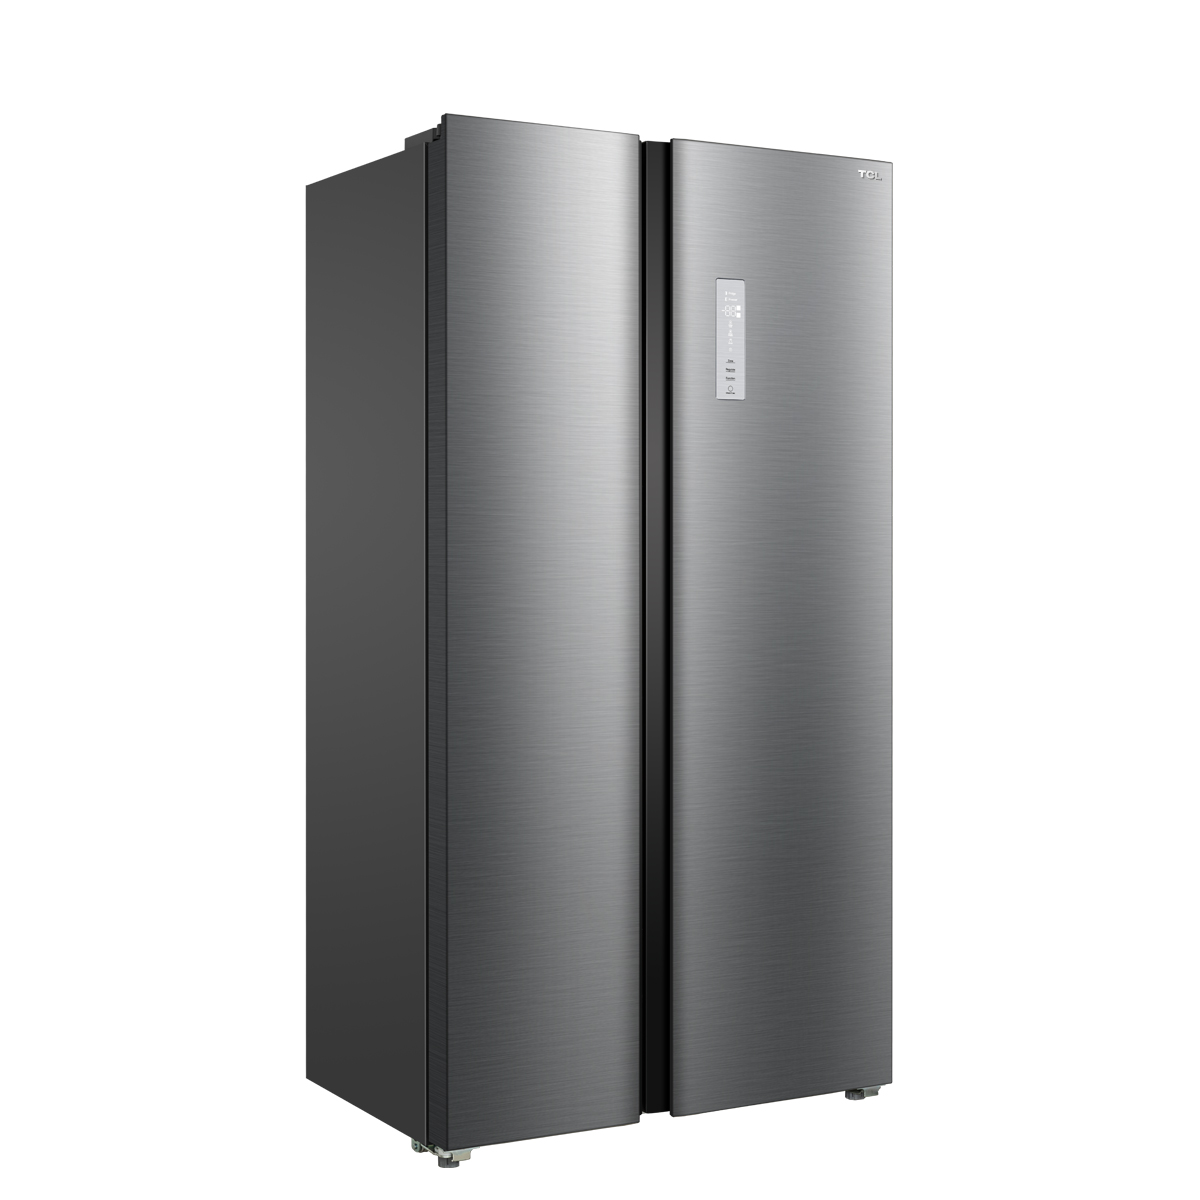 [ผ่อน 0% นาน 10 เดือน] NEW TCL ตู้เย็น Side by Side ระบบ Inverter No frost ขนาด 505L / 17.5Q รุ่น P505SBN พร้อมแผงควบคุมระบบดิจิตอล ประหยัดไฟ ความจุสูง